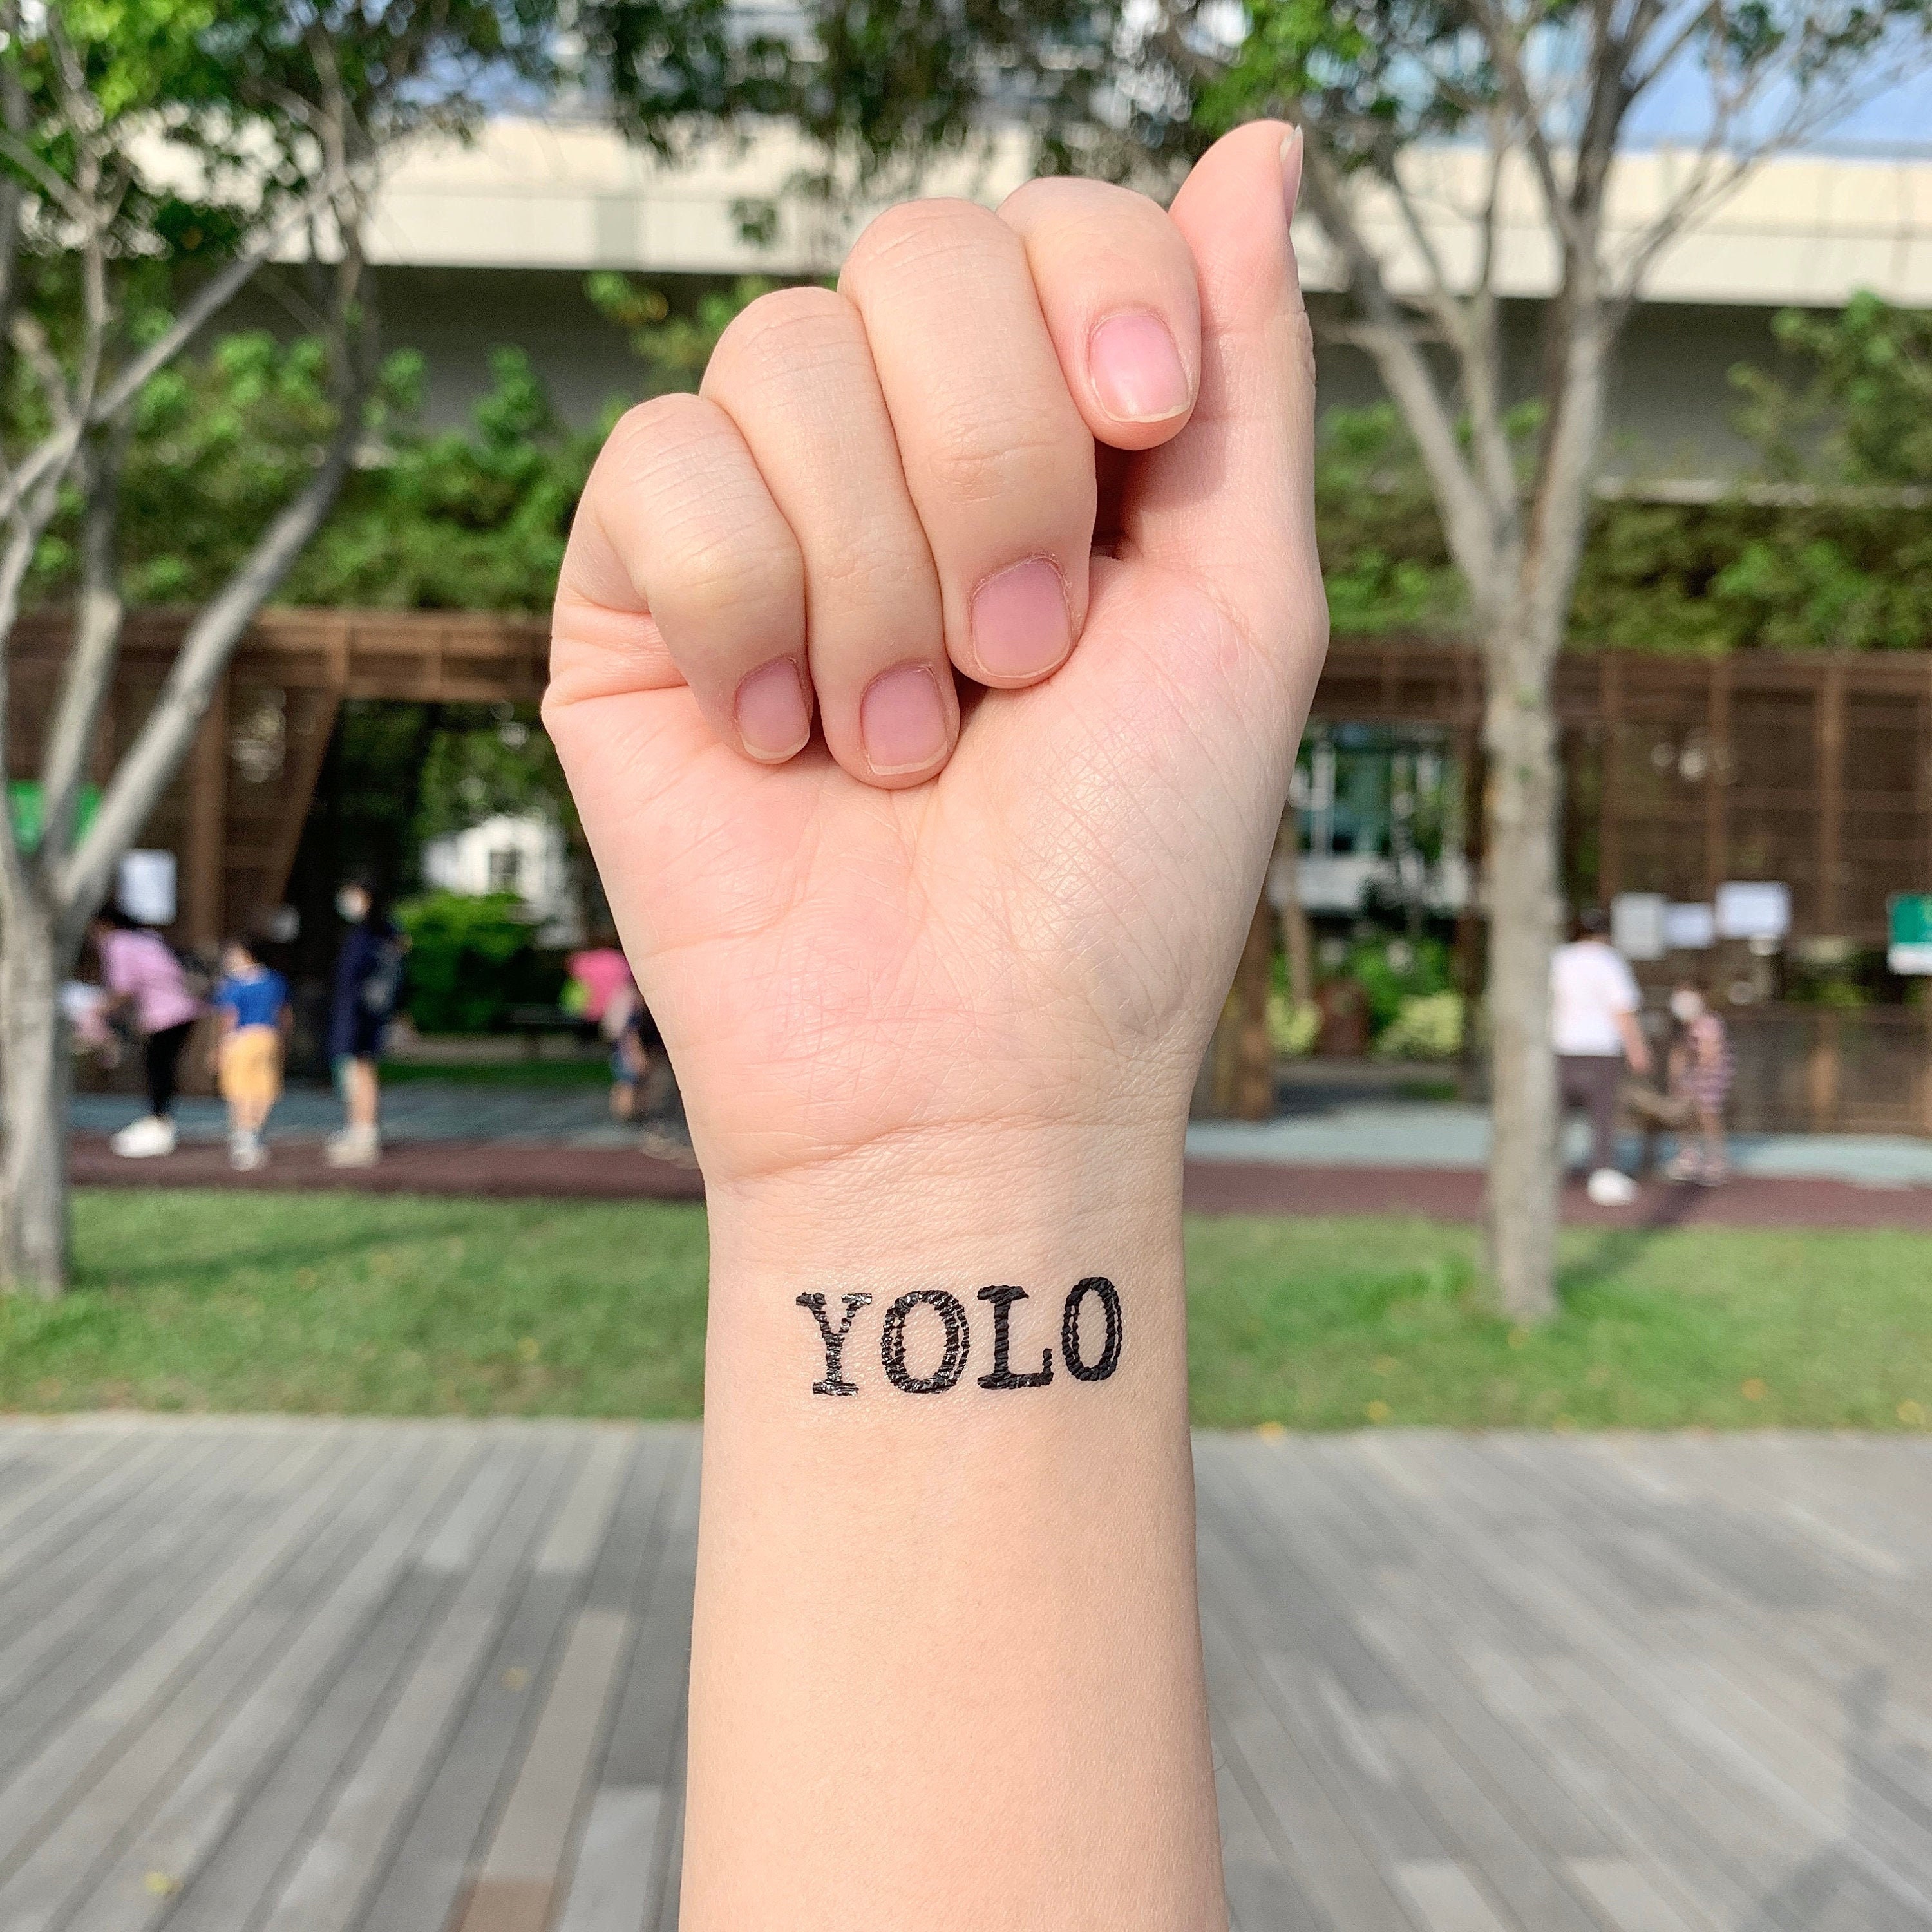 Bạn đang cần lót đường tạm thời YOLO để xây dựng công trình mới? Chúng tôi cung cấp các giải pháp lót đường chất lượng tốt nhất với hình ảnh xăm YOLO độc đáo từ Etsy Hong Kong. Hãy cùng xem và tận hưởng những điều tuyệt vời mà YOLO mang lại cho cuộc sống của bạn.